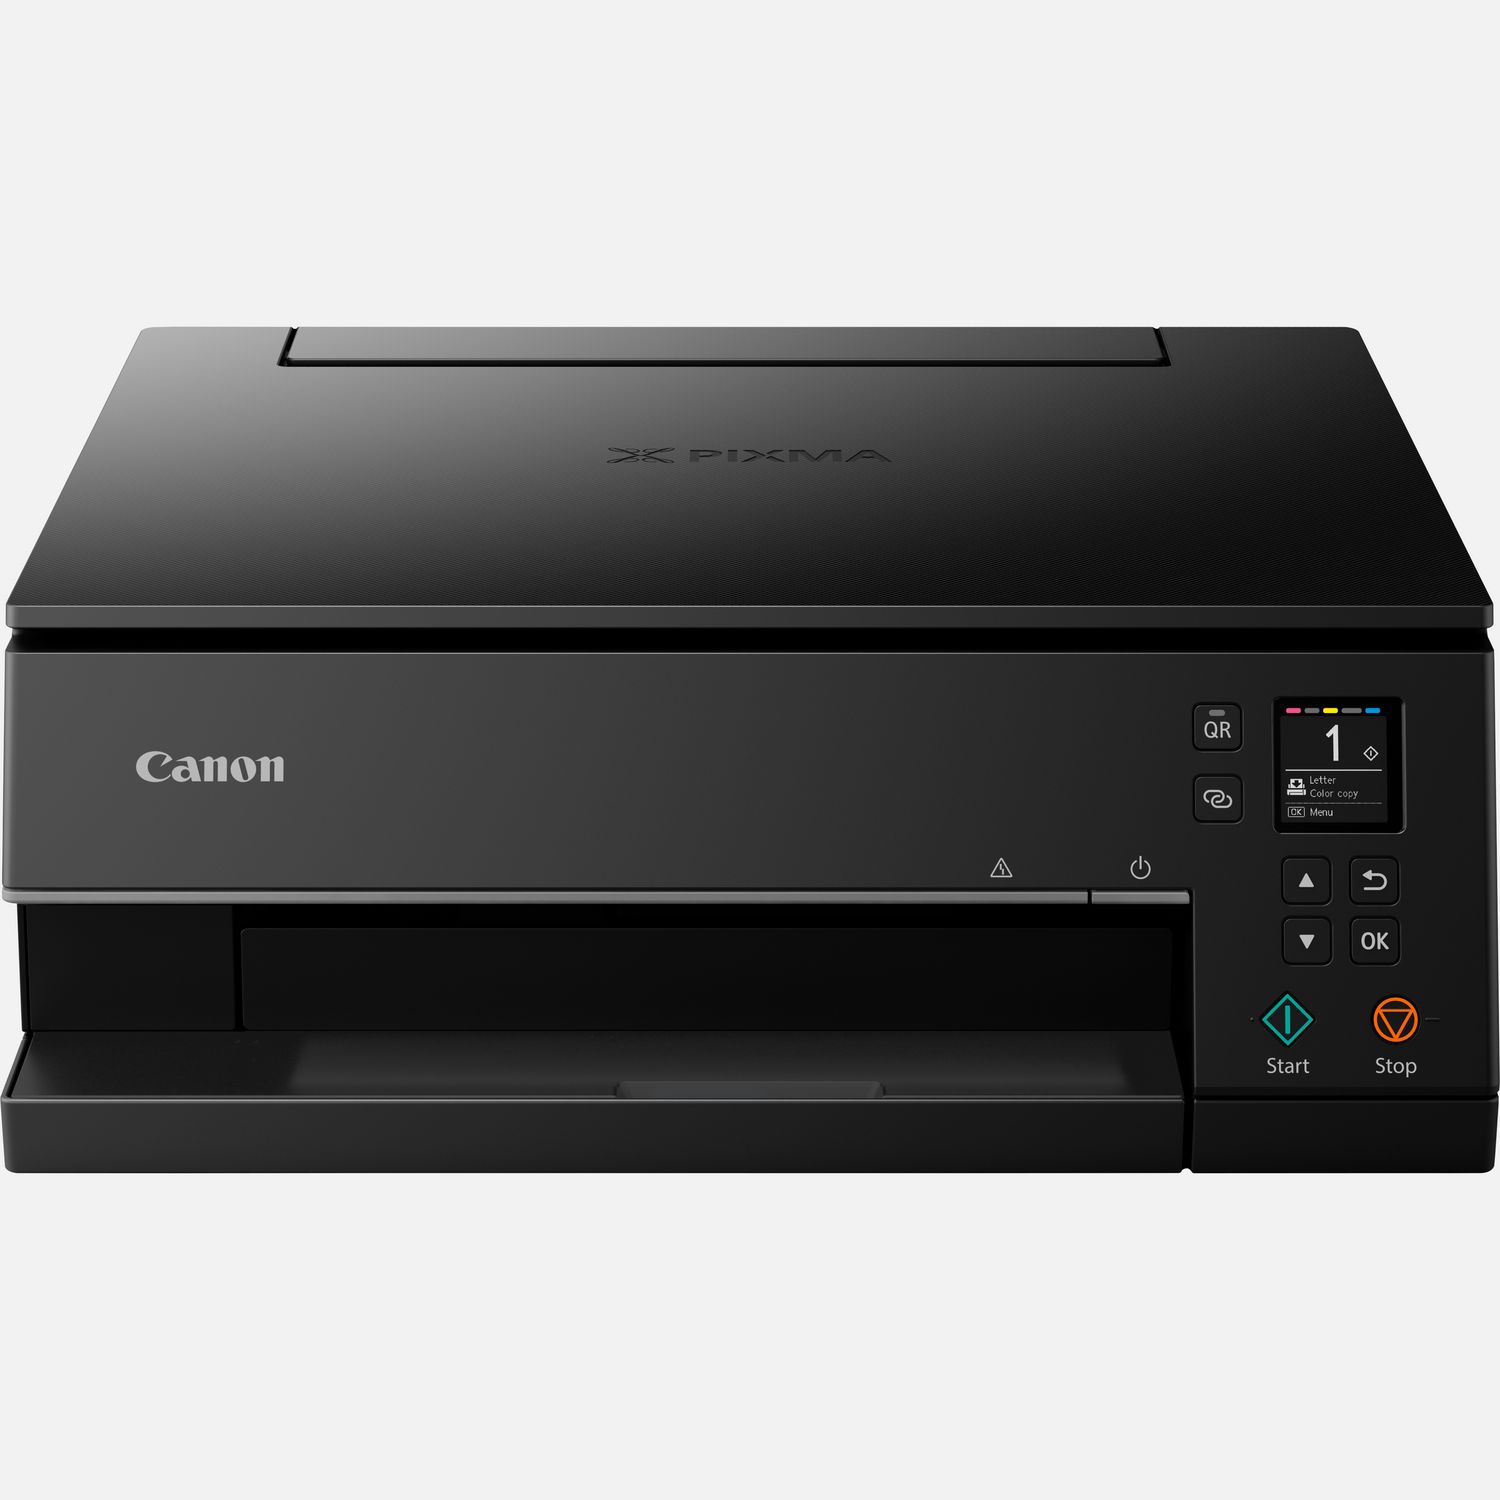 Image of Stampante fotografica wireless inkjet a colori multifunzione Canon PIXMA TS6350a, nero